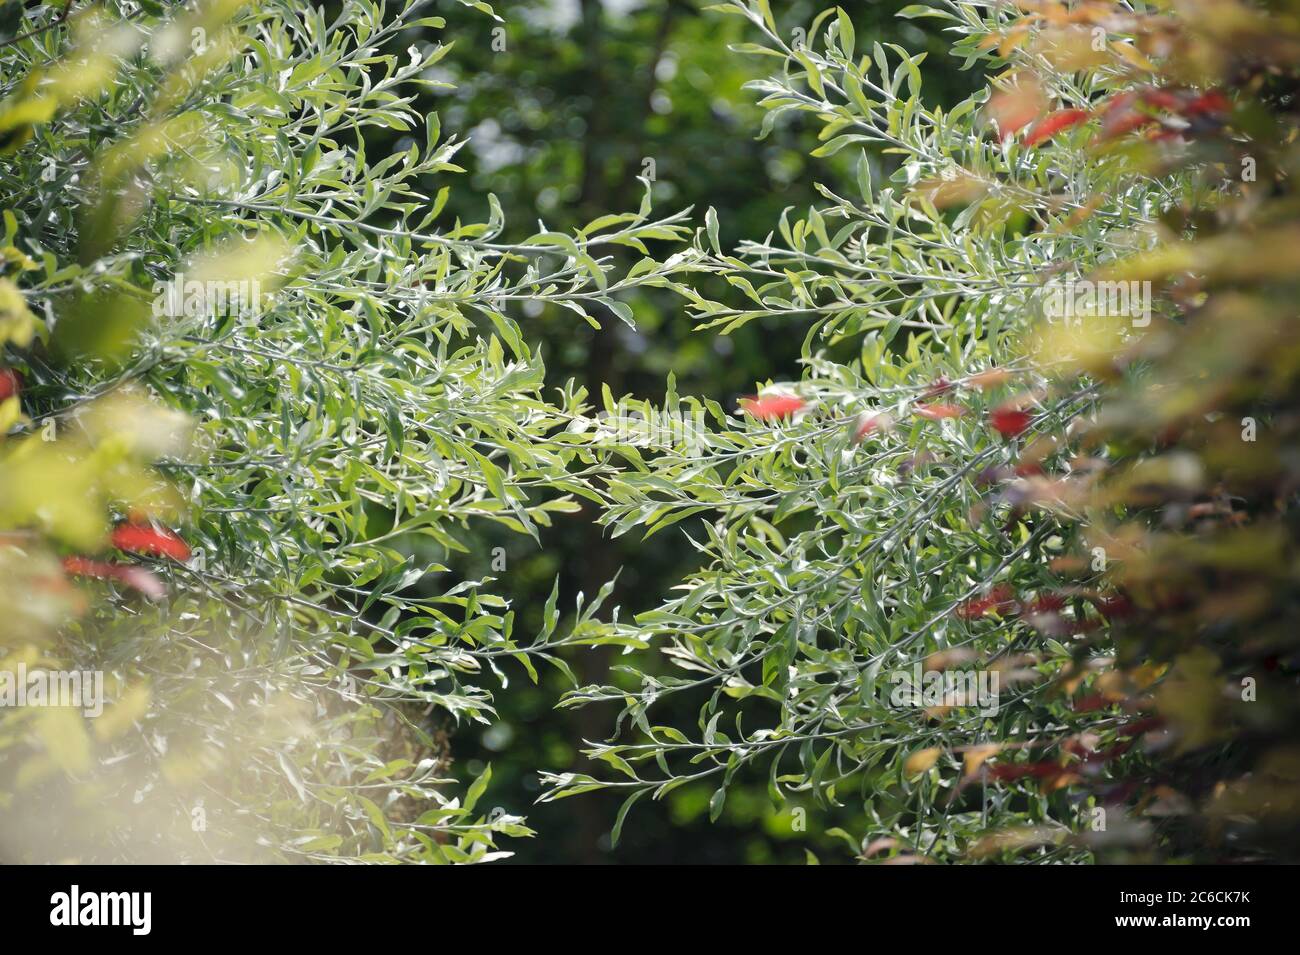 Weidenblaettrige Birne, Pyrus salicifolia, Pyrus salicifolia, Pyrus salicifolia Stock Photo